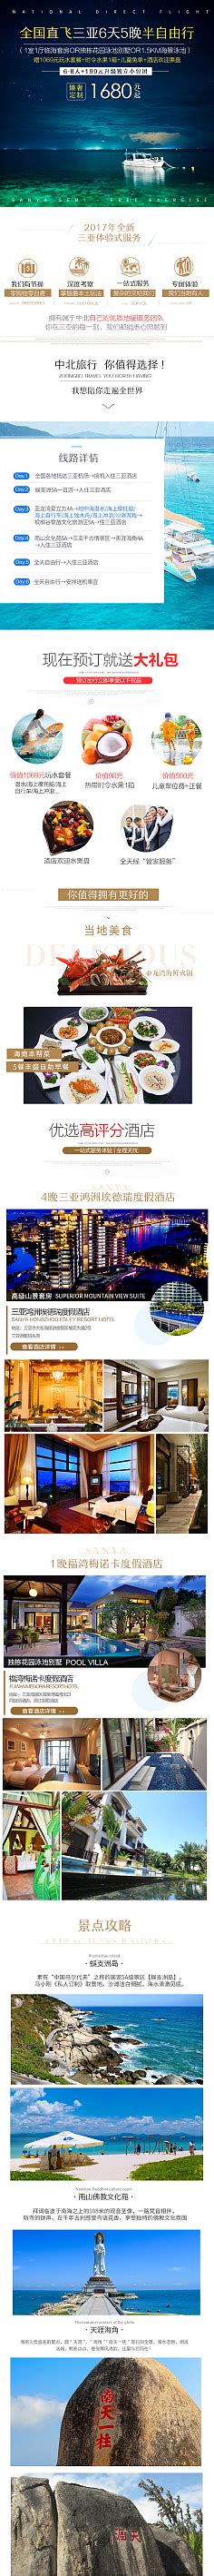 【行走自贸区】三亚中央商务区制度集成创新 全球知名游艇公司等达成入驻意向 - 周到上海